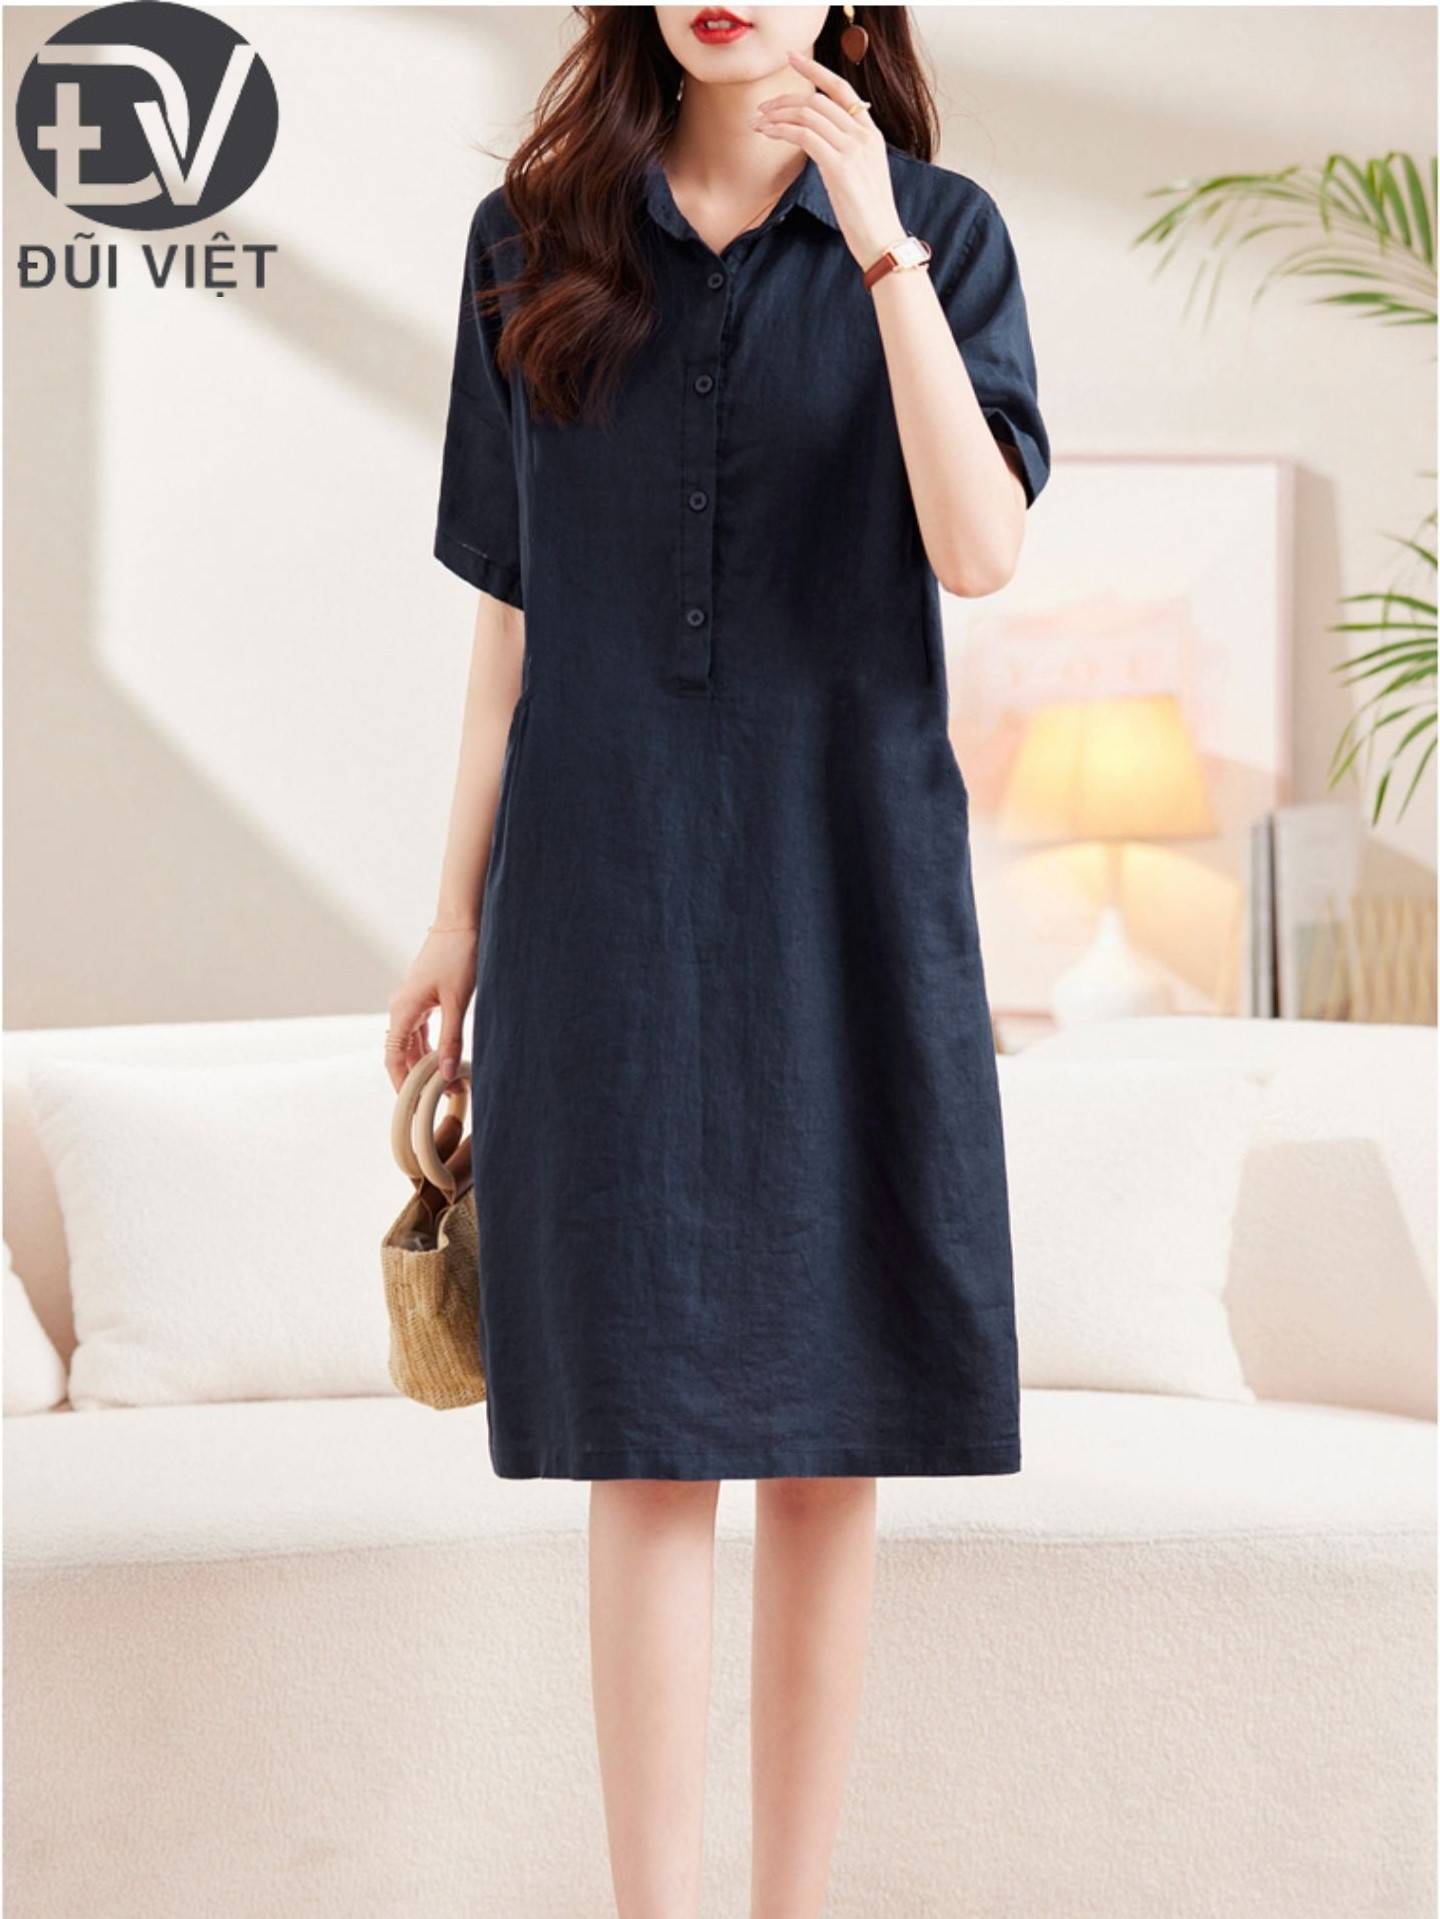 Đầm váy sơ mi nữ ngắn tay, phong cách trẻ trung Hàn Quốc, chất vải Linen mềm cao cấp, thời trang công sở Đũi Việt